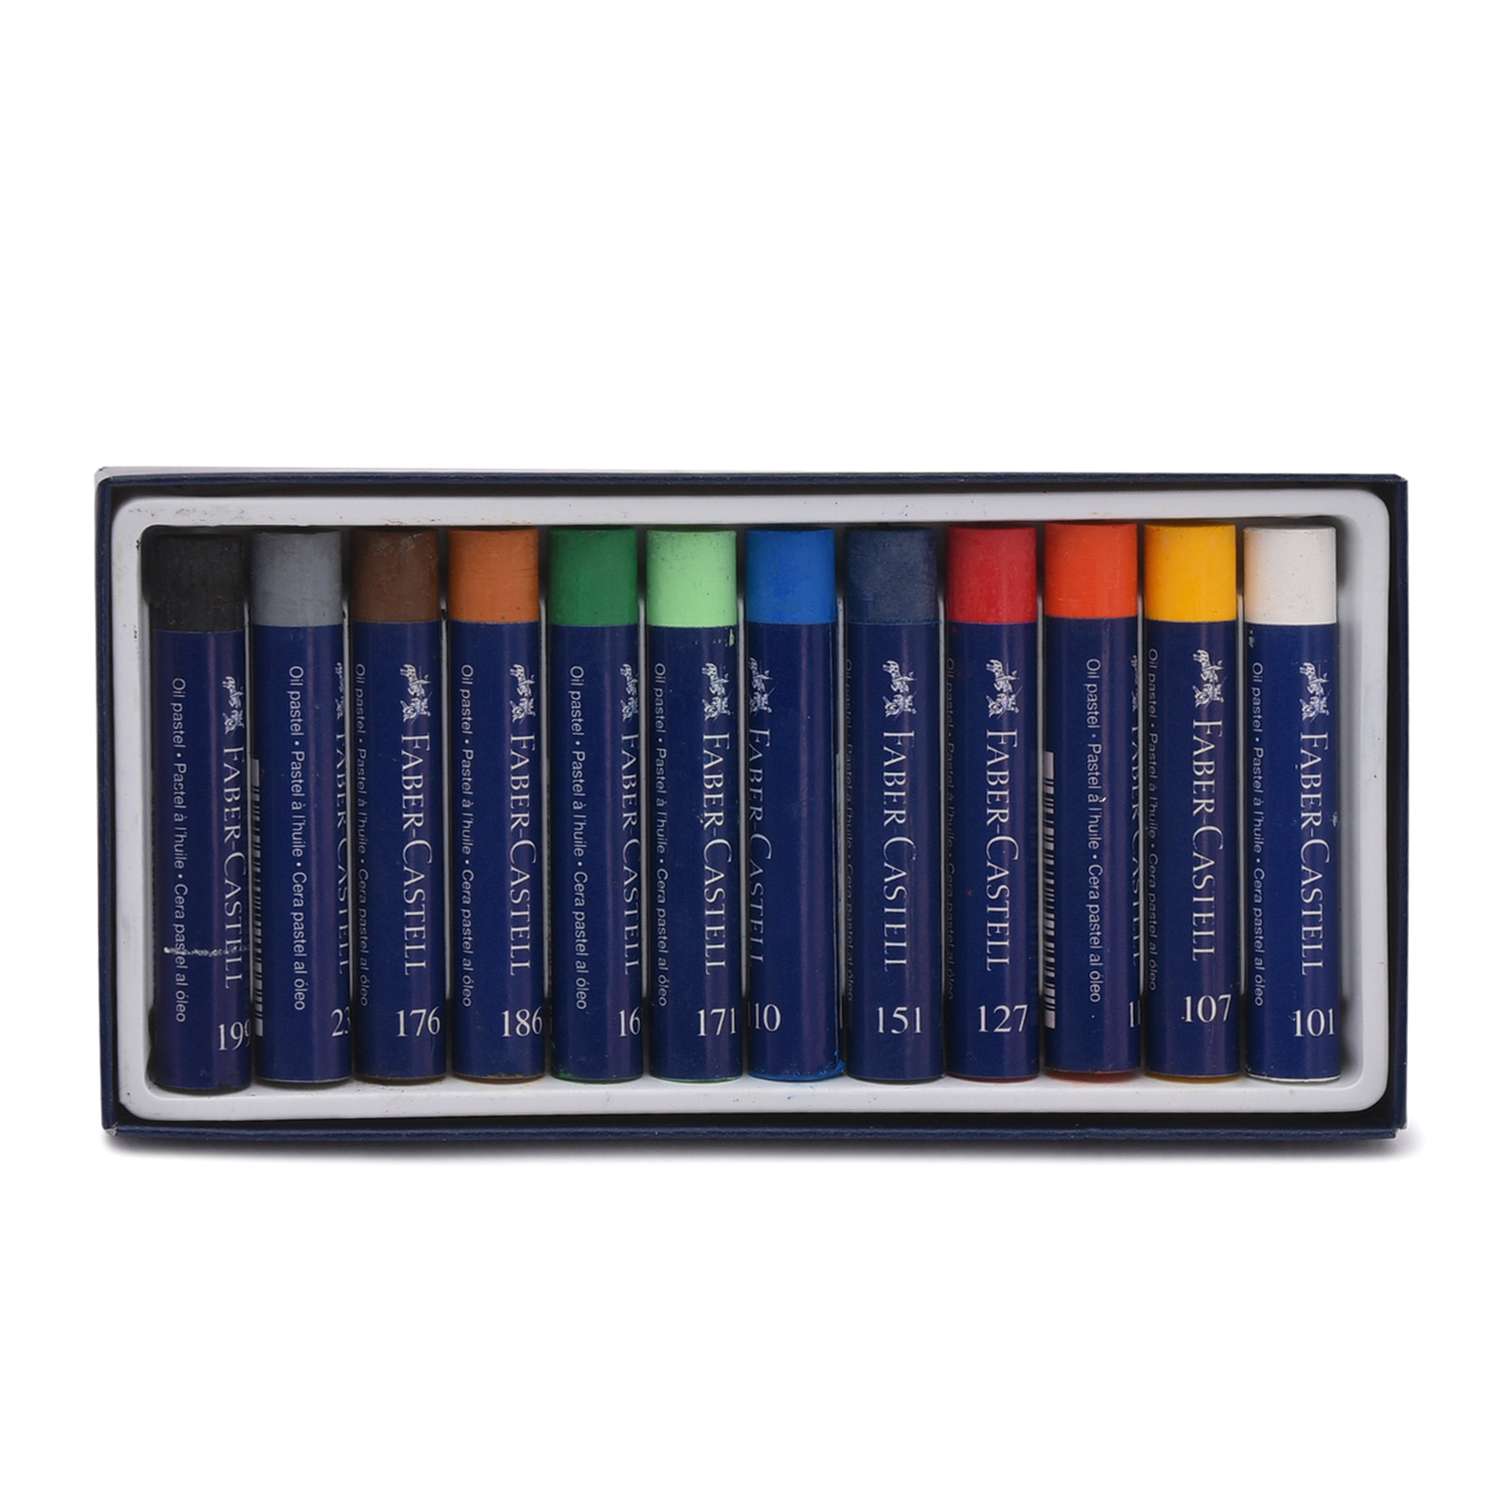 Масляная пастель Faber Castell STUDIO QUALITY набор цветов в картонной коробке 12 шт. - фото 1